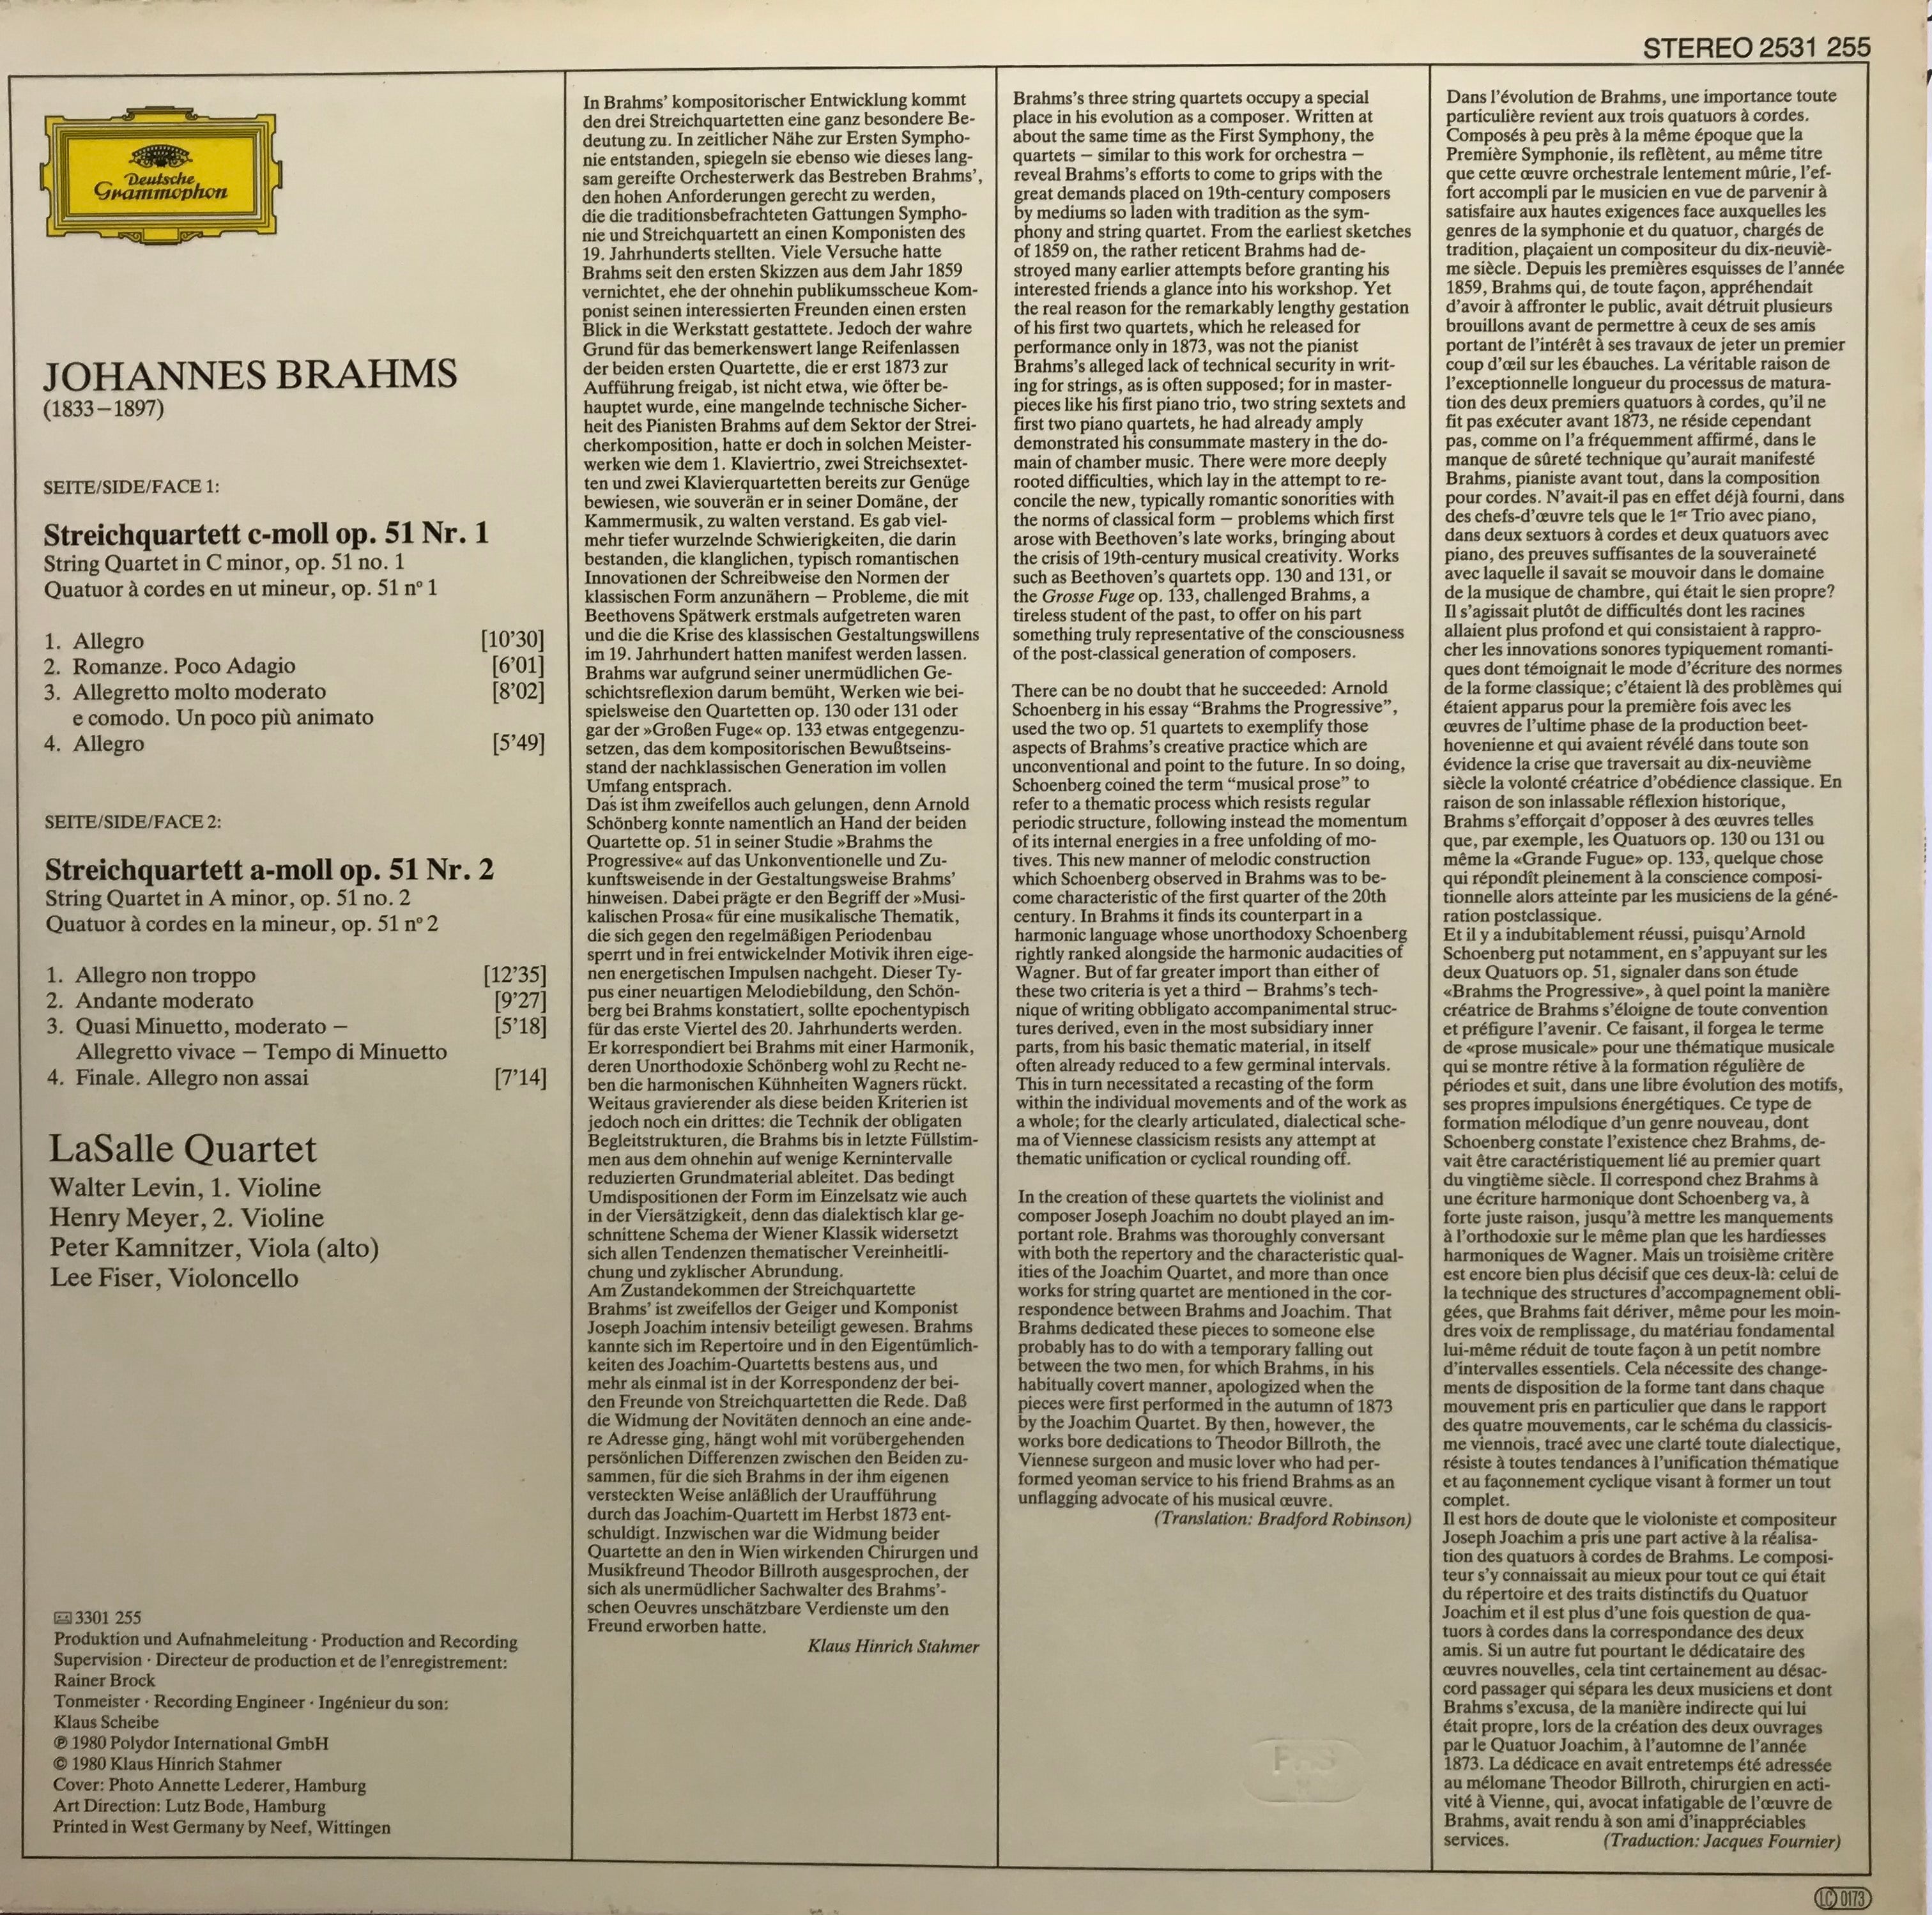 Johannes Brahms, Streichquartette - String Quartets op. 51, No. 1 & No. 2, LaSalle Quartett